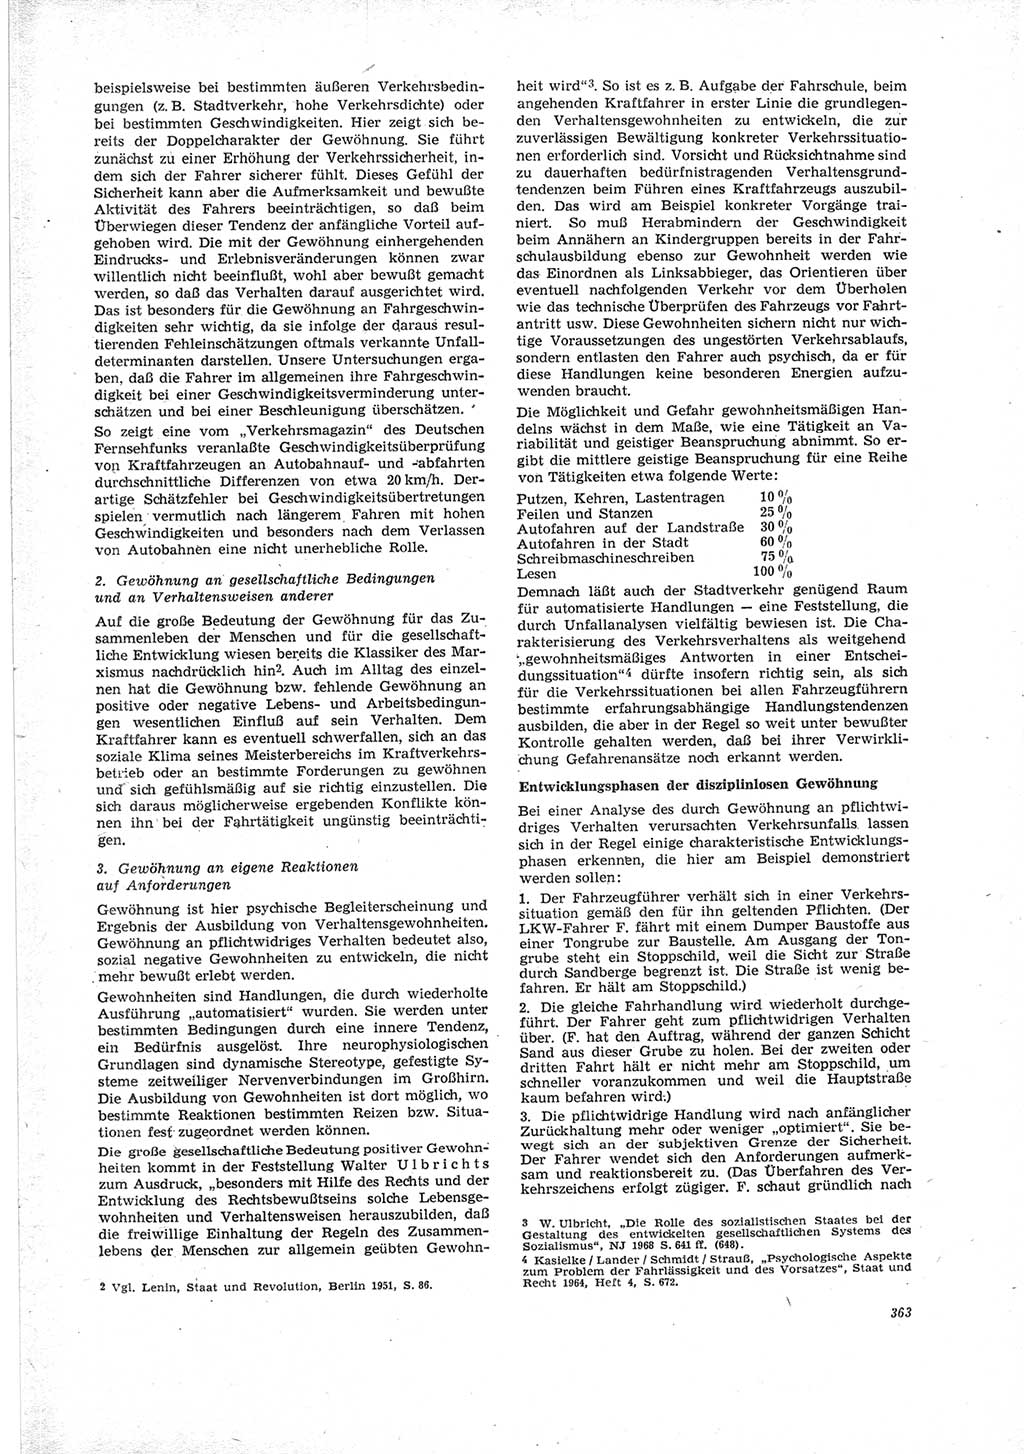 Neue Justiz (NJ), Zeitschrift für Recht und Rechtswissenschaft [Deutsche Demokratische Republik (DDR)], 23. Jahrgang 1969, Seite 363 (NJ DDR 1969, S. 363)